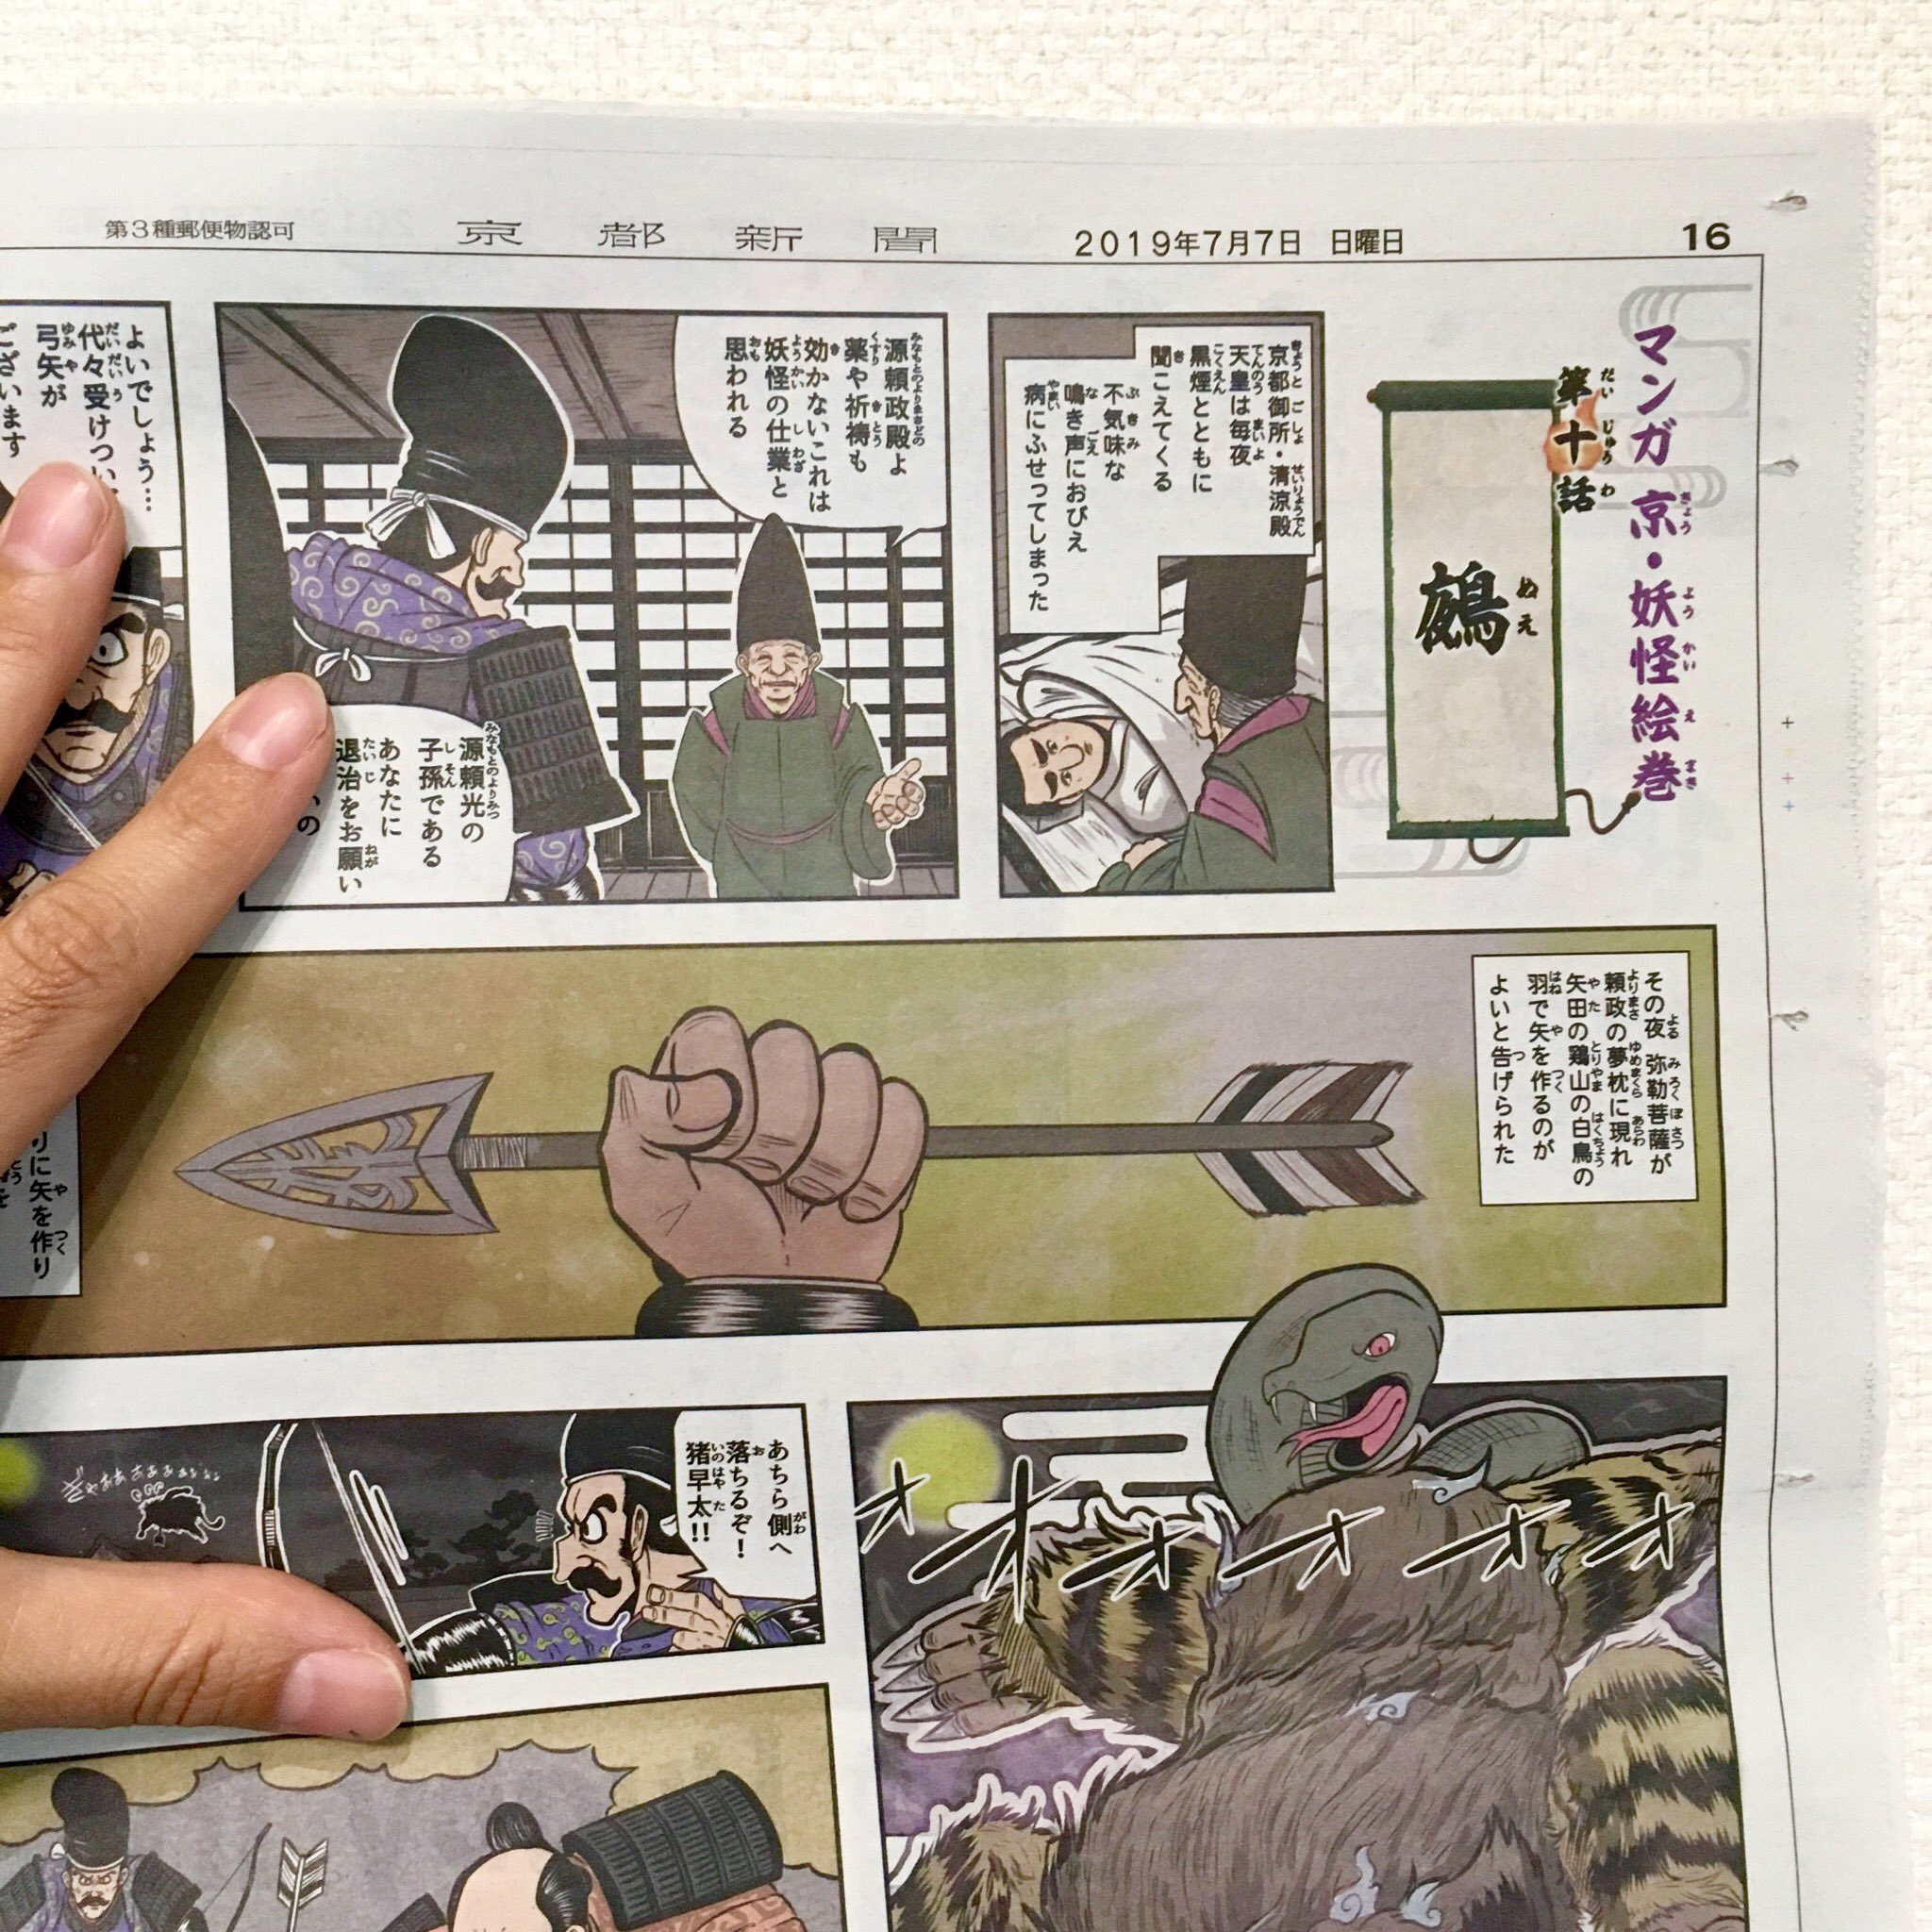 こやまもえ 京都新聞 ジュニアタイムズ 裏面の マンガ 京 妖怪絵巻 第十話 鵺 ぬえ が掲載されました 毎週日曜日 京都新聞に折り込みとして入ってます 京都新聞の方はぜひチェックしてみて下さい 京都新聞 ジュニアタイムズ マンガ京妖怪